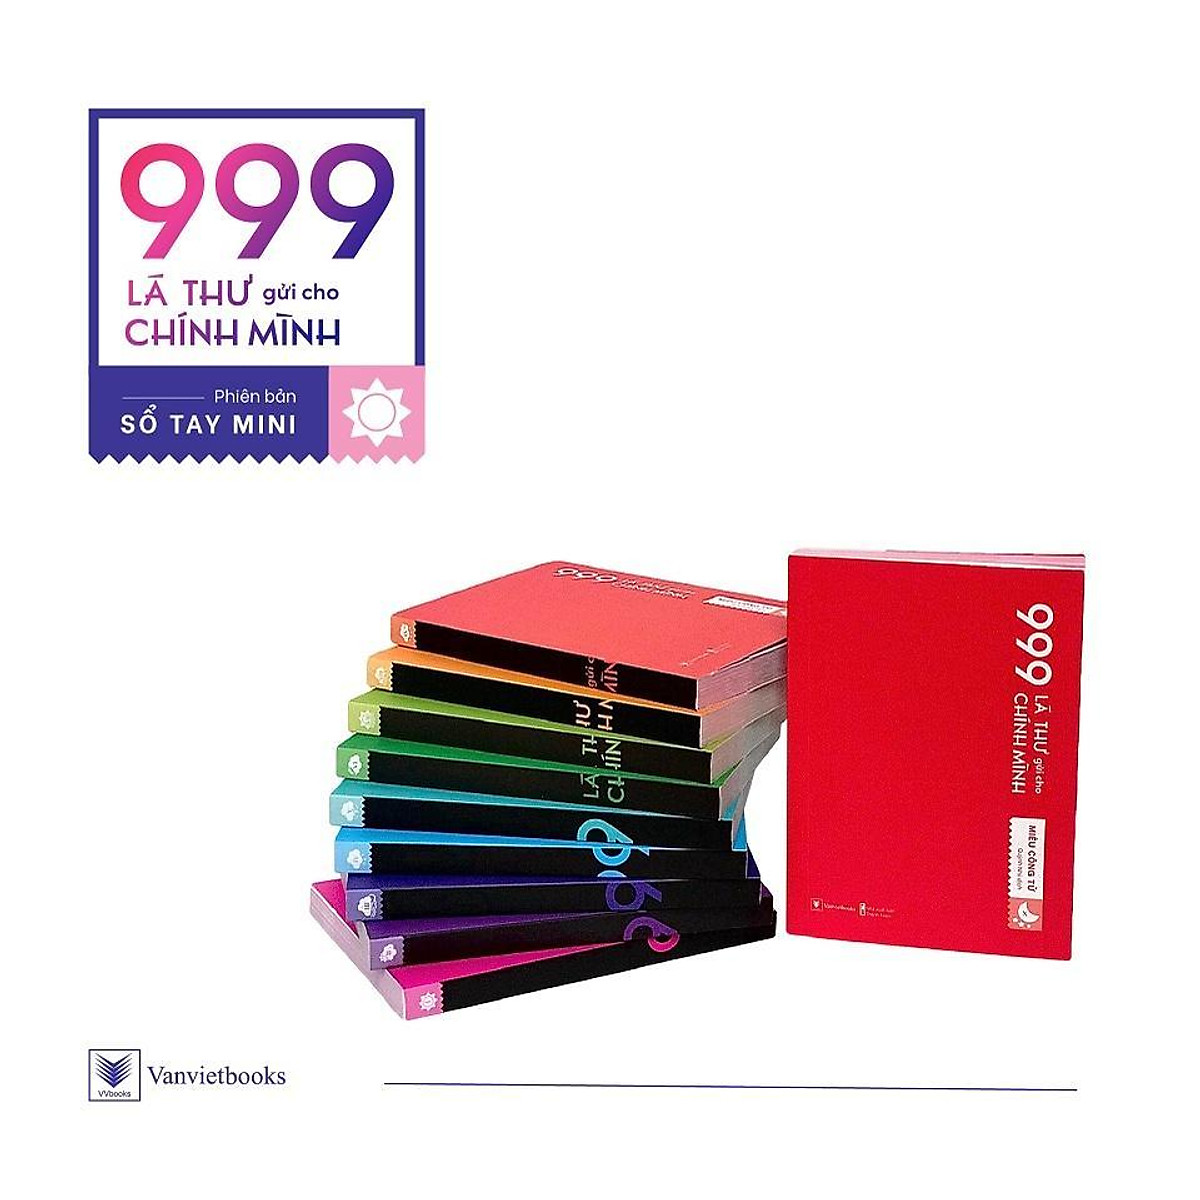 Bộ Sách “999 Lá Thư Gửi Cho Chính Mình” – Phiên Bản Mini (10 Tập ...